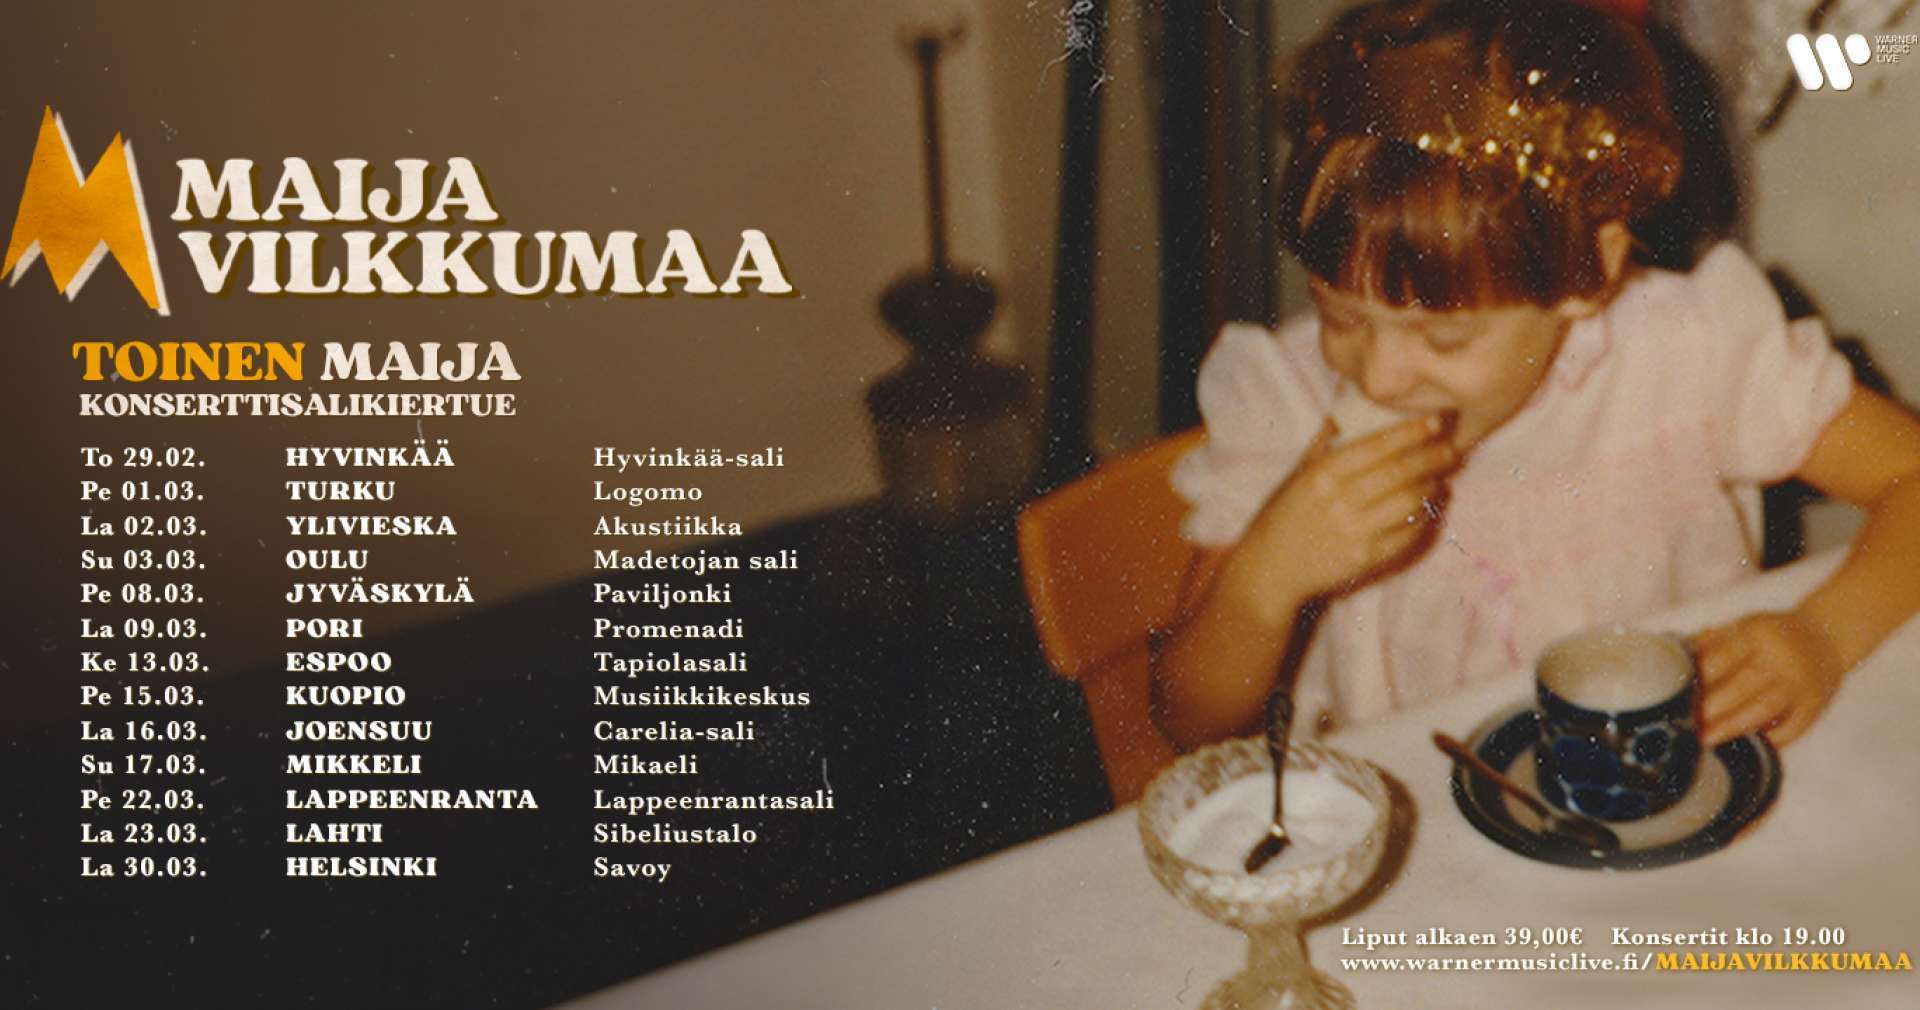 Maija Vilkkumaa - Toinen Maija -konserttisalikiertue